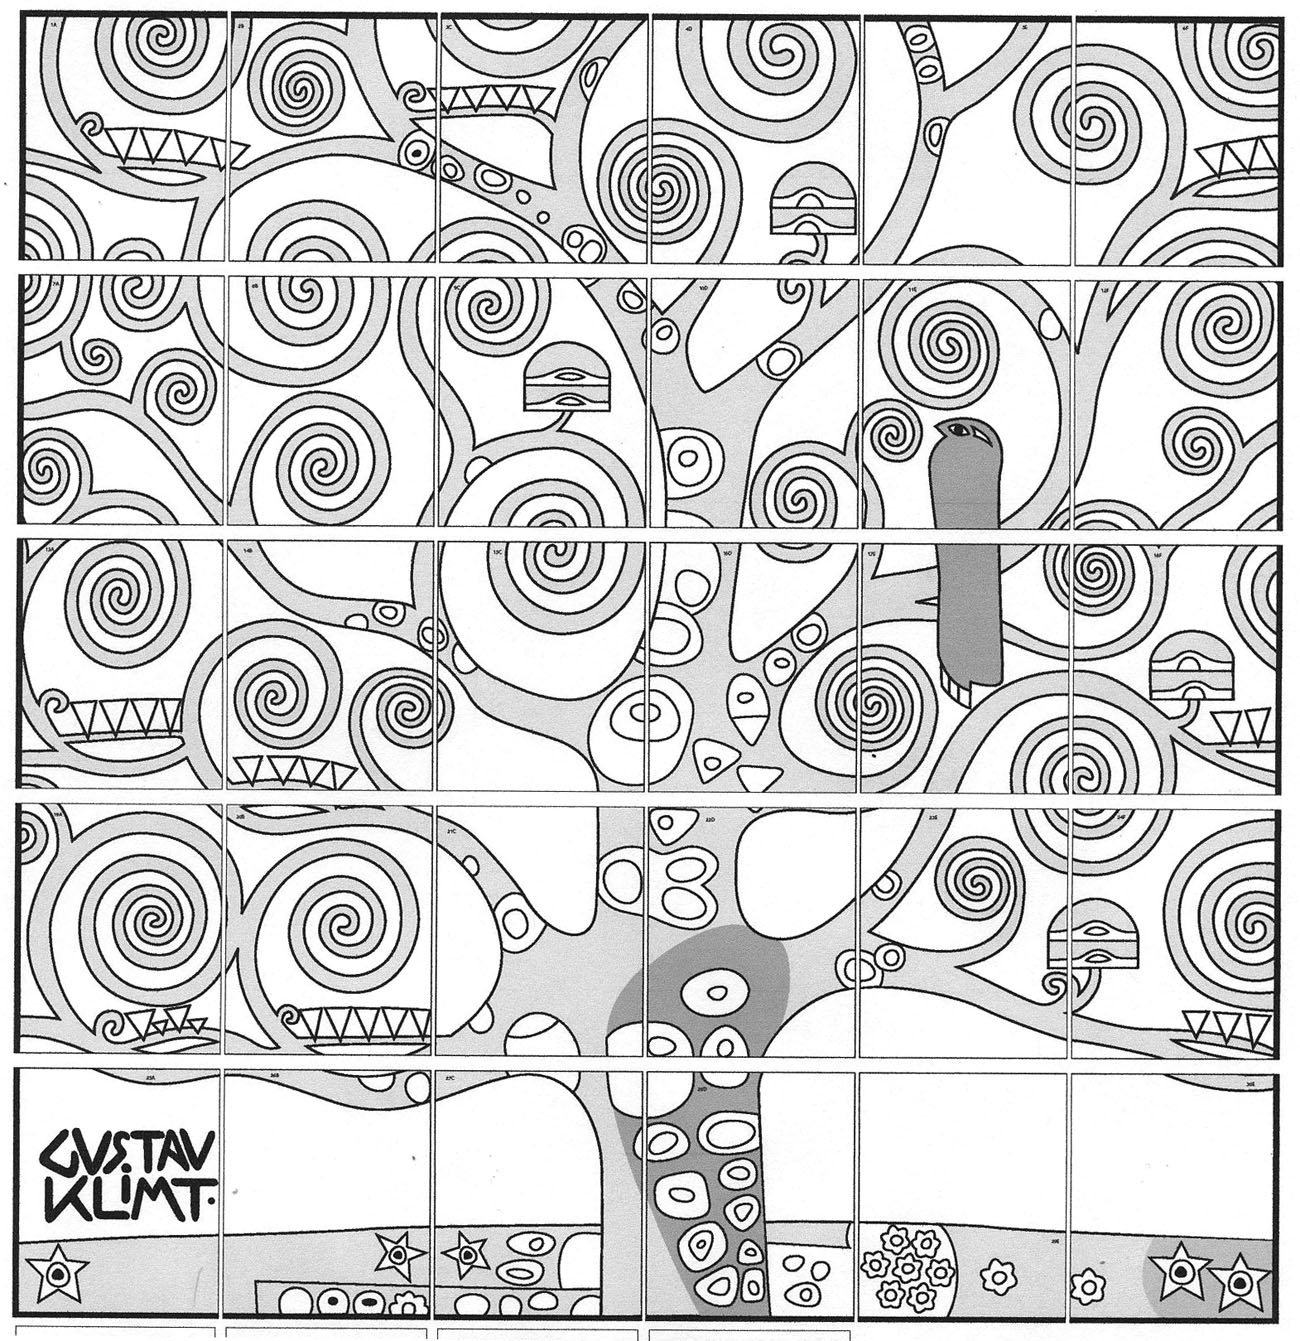 Klimt Tree diagram